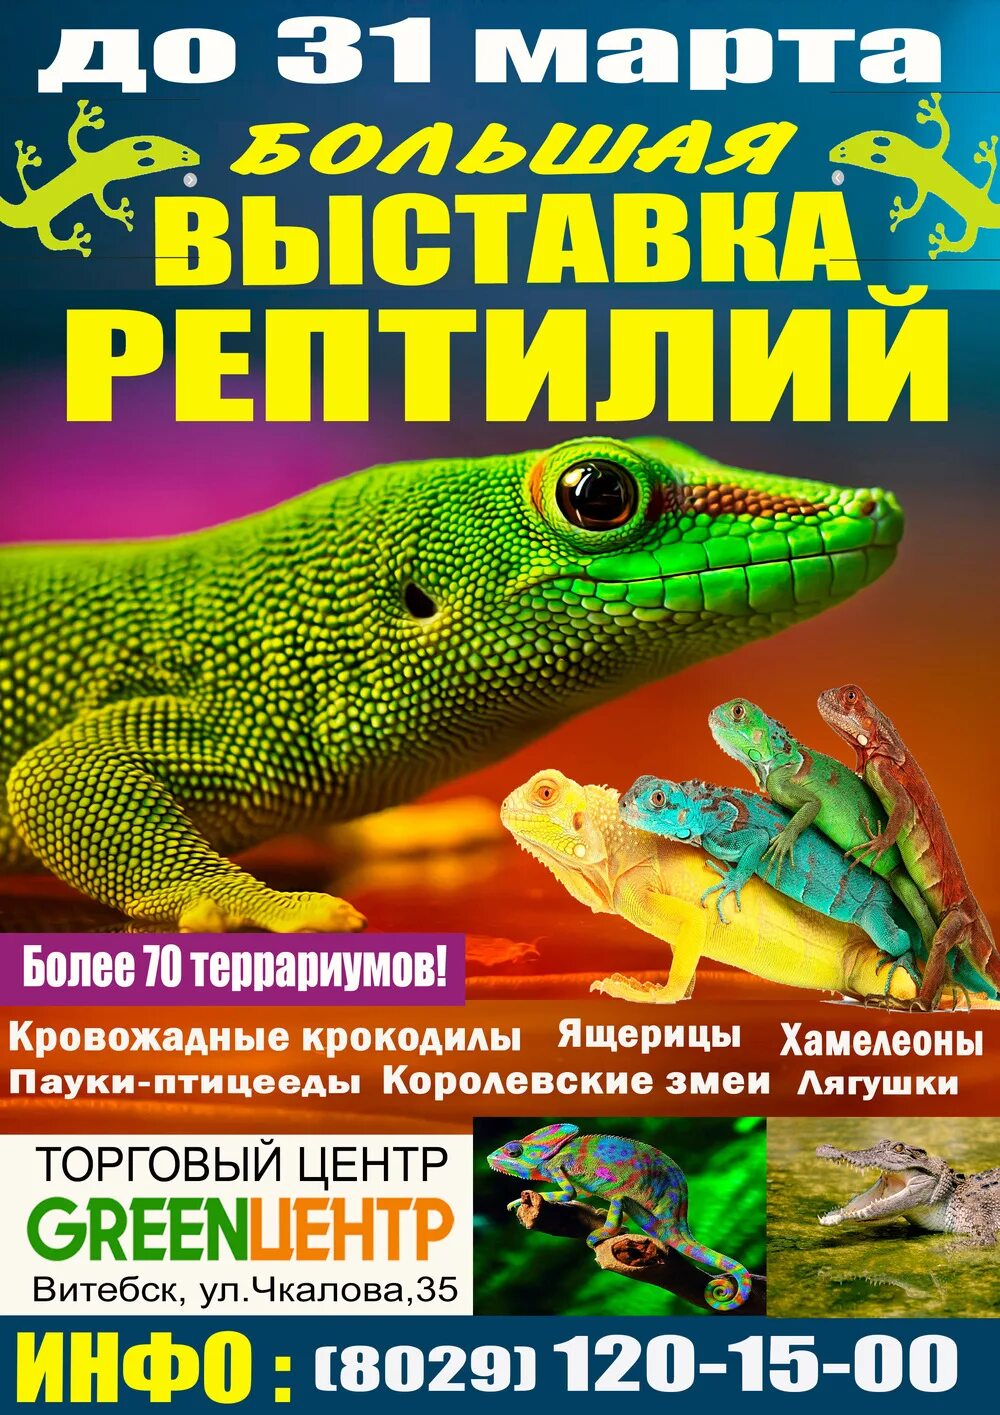 Выставка рептилий. Афиша выставка рептилий. Выставка рептилий в Москве. Выставка экзотических животных. Покровский красноярск выставка рептилий